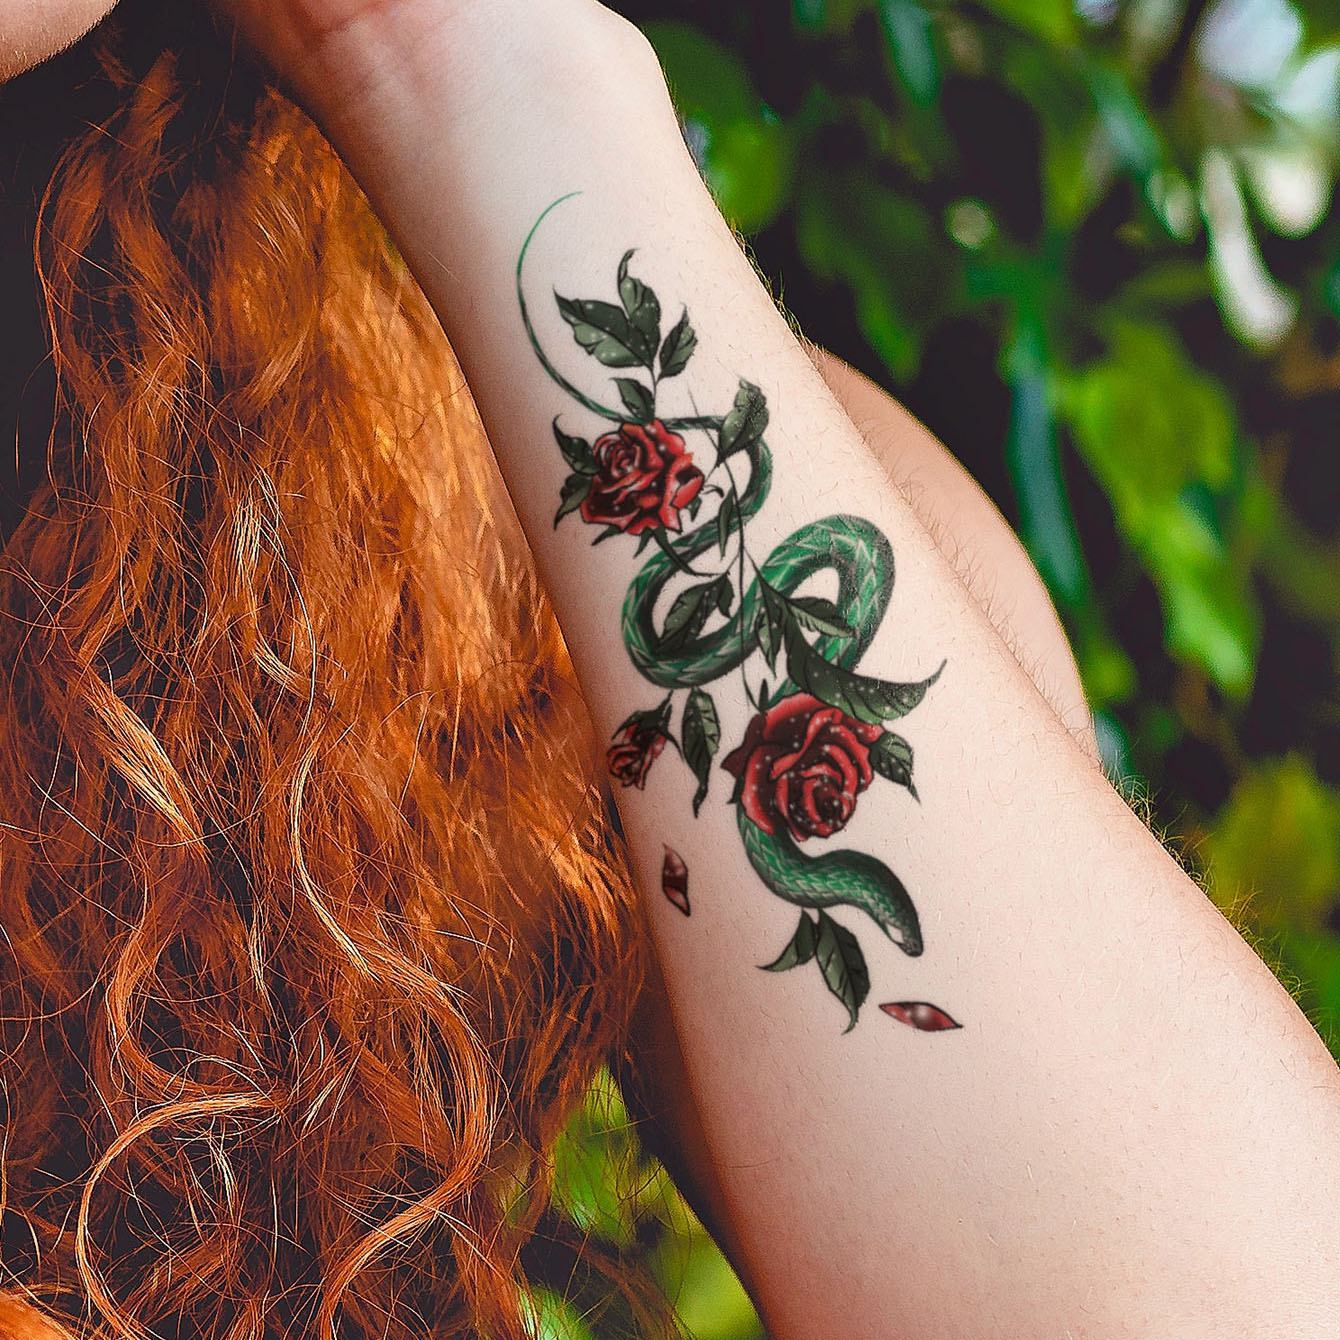 minkissy 12 Folhas Adesivos De Tatuagem De Borboleta Decalques De Tatuagens  Femininas Tatuagens Corporais Tatuagens De Flores Adesivos De Mão Adultos  Adesivos De Mão Corpo Pequenos